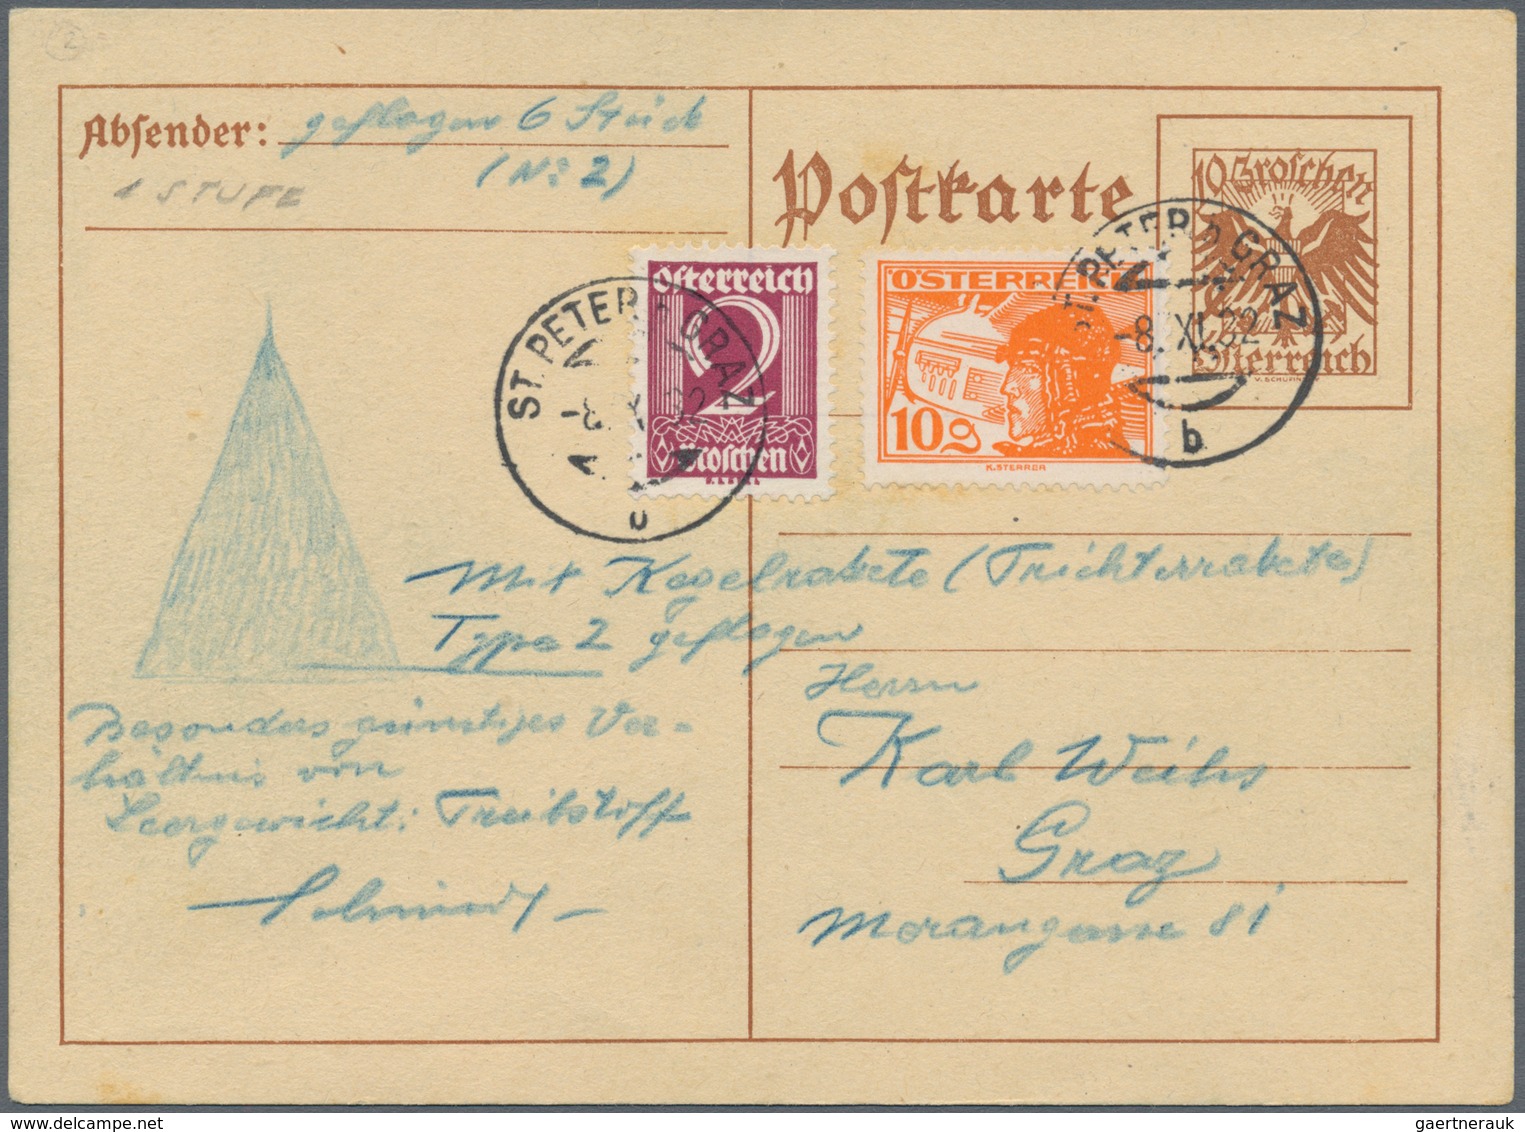 00631 Raketenpost: Friedrich Schmiedl Friedrich Schmiedl was born on 14.05.1902 in Schwertberg in Upper Au